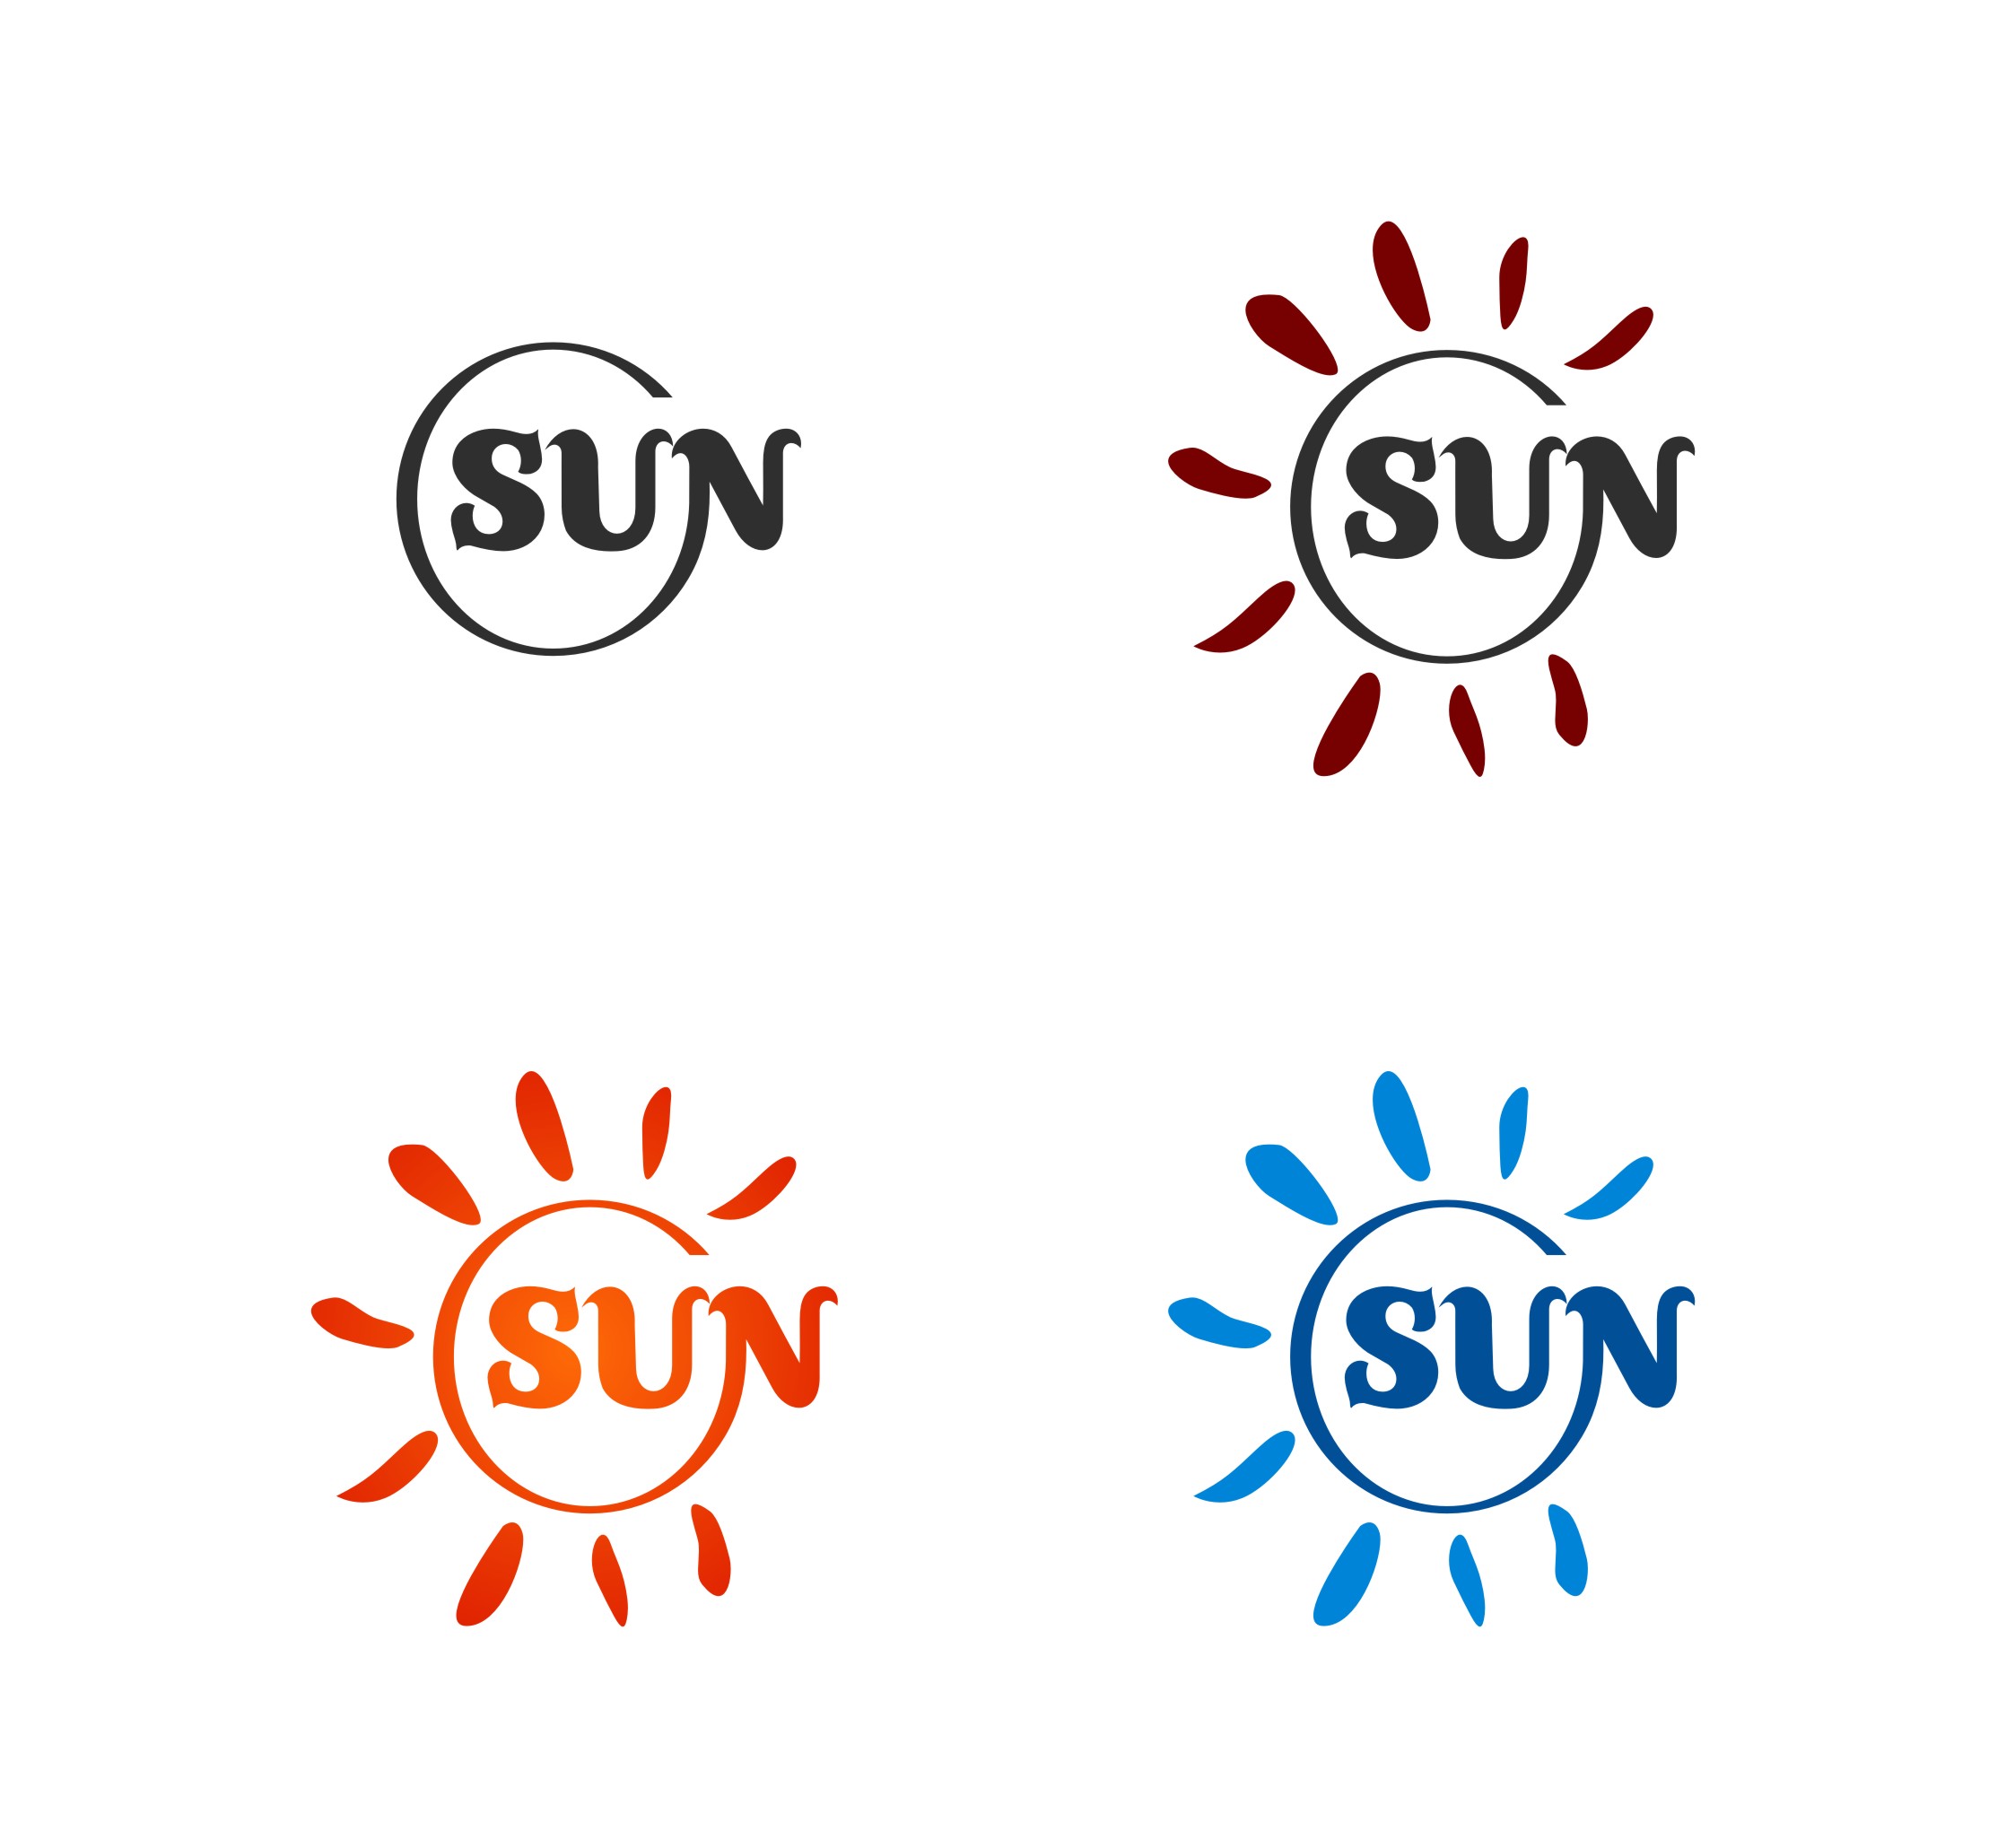 帮我设定一个商标字体,是英文sun